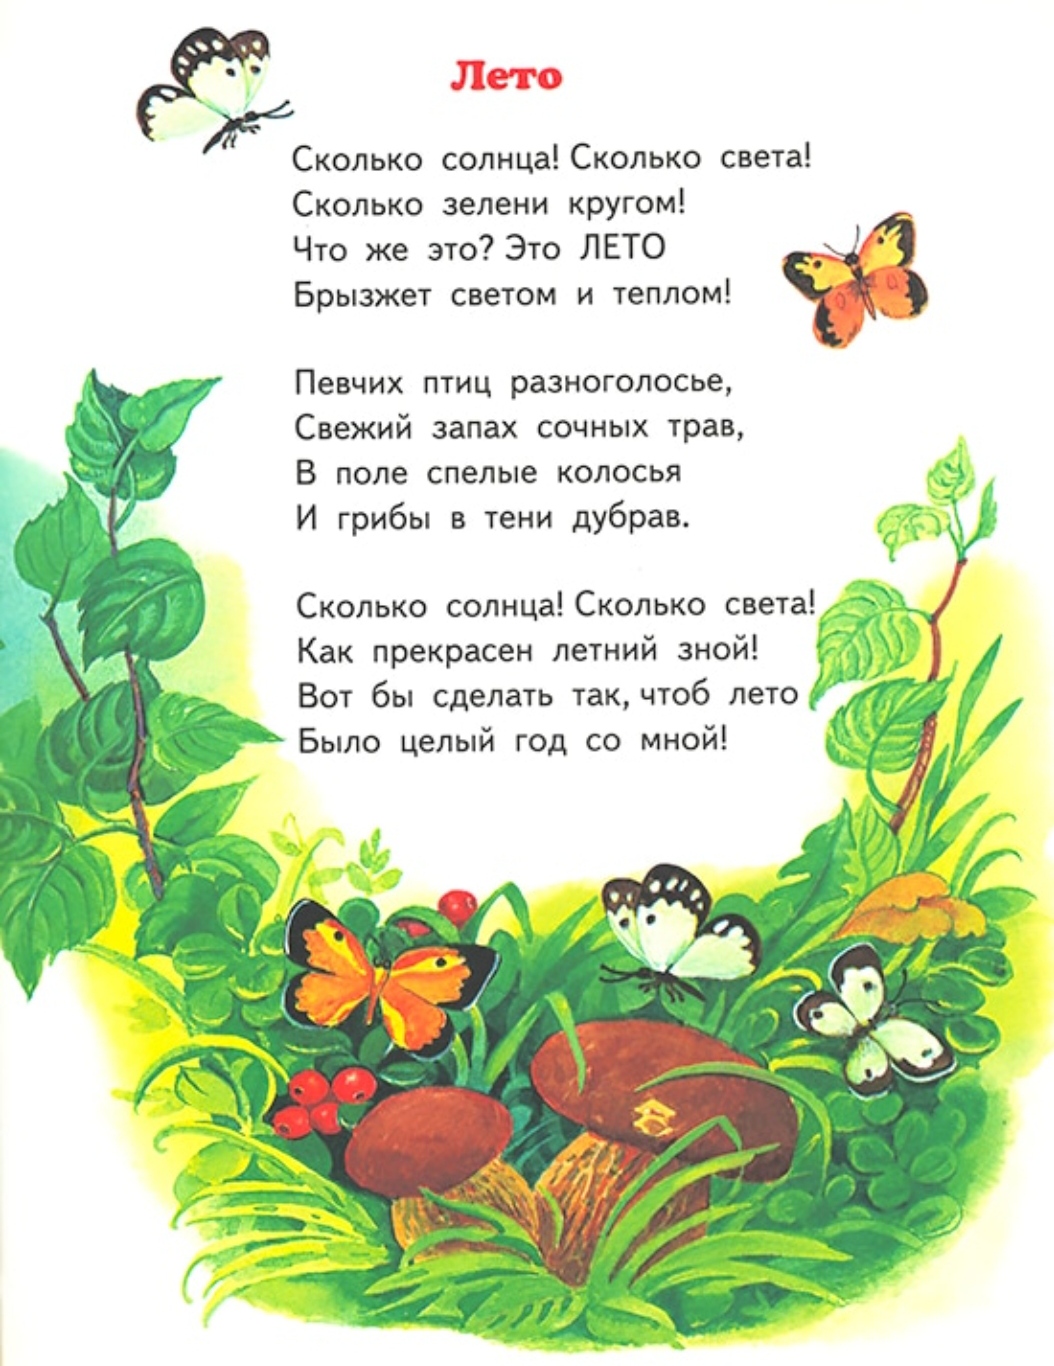 Стихотворение 3 куплета. Летние стихи. Детские стихи. Стихи про лето для детей. Красивые стихи для детей.